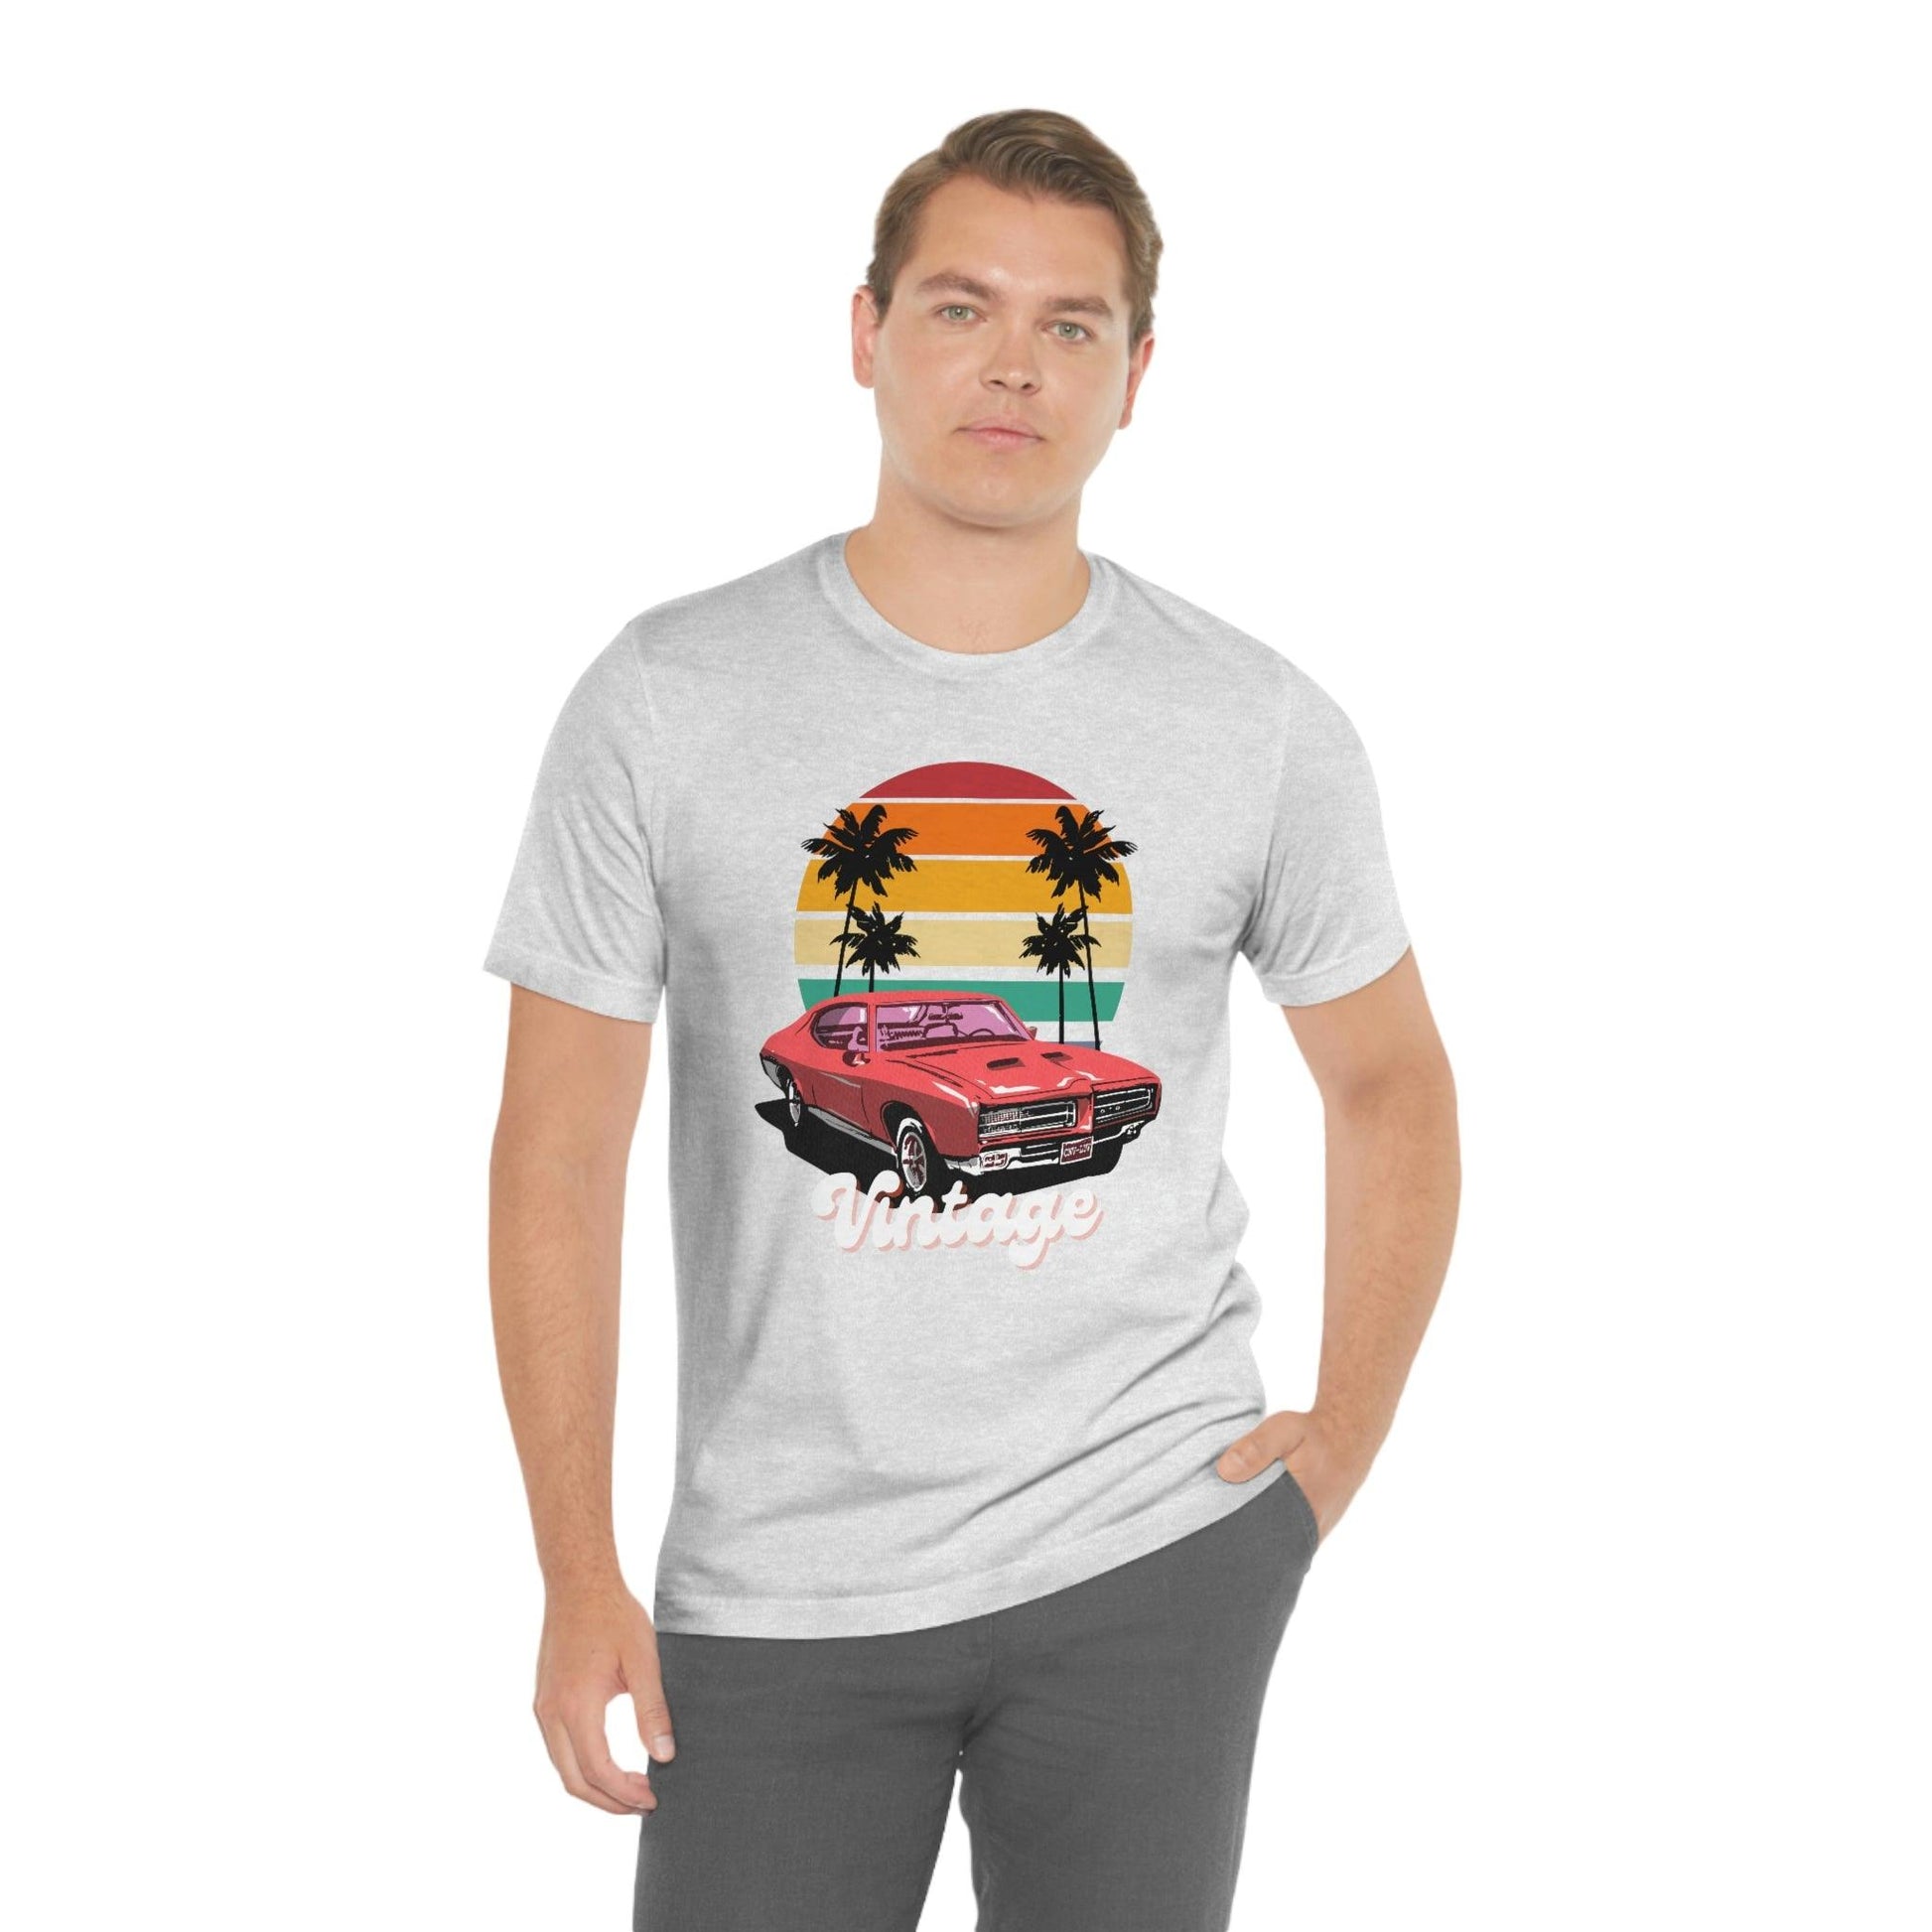 Vintage car tshirt - Vintage car shirt classic car shirt muscle car shirt, car shirt, gifts for car lovers, - Giftsmojo